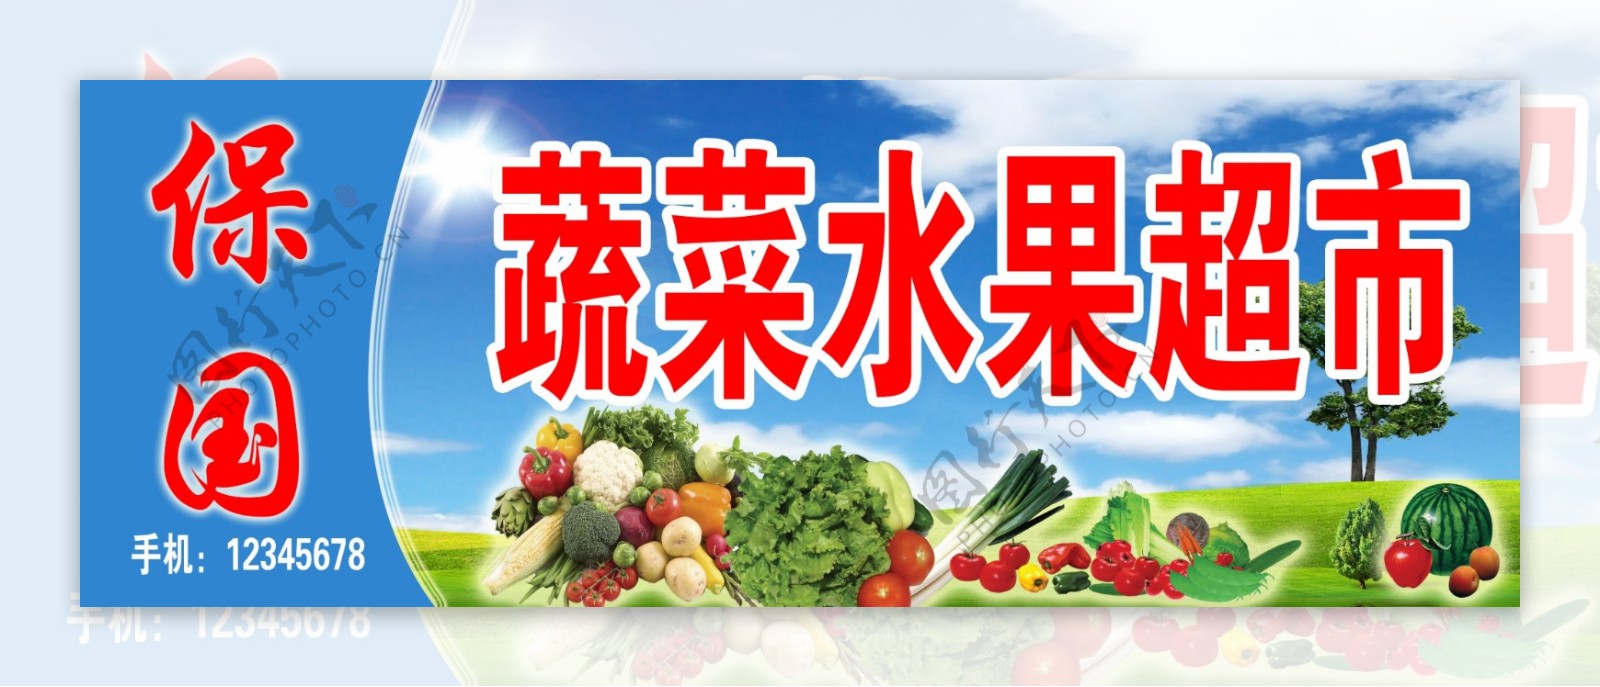 蔬菜水果超市门头图片